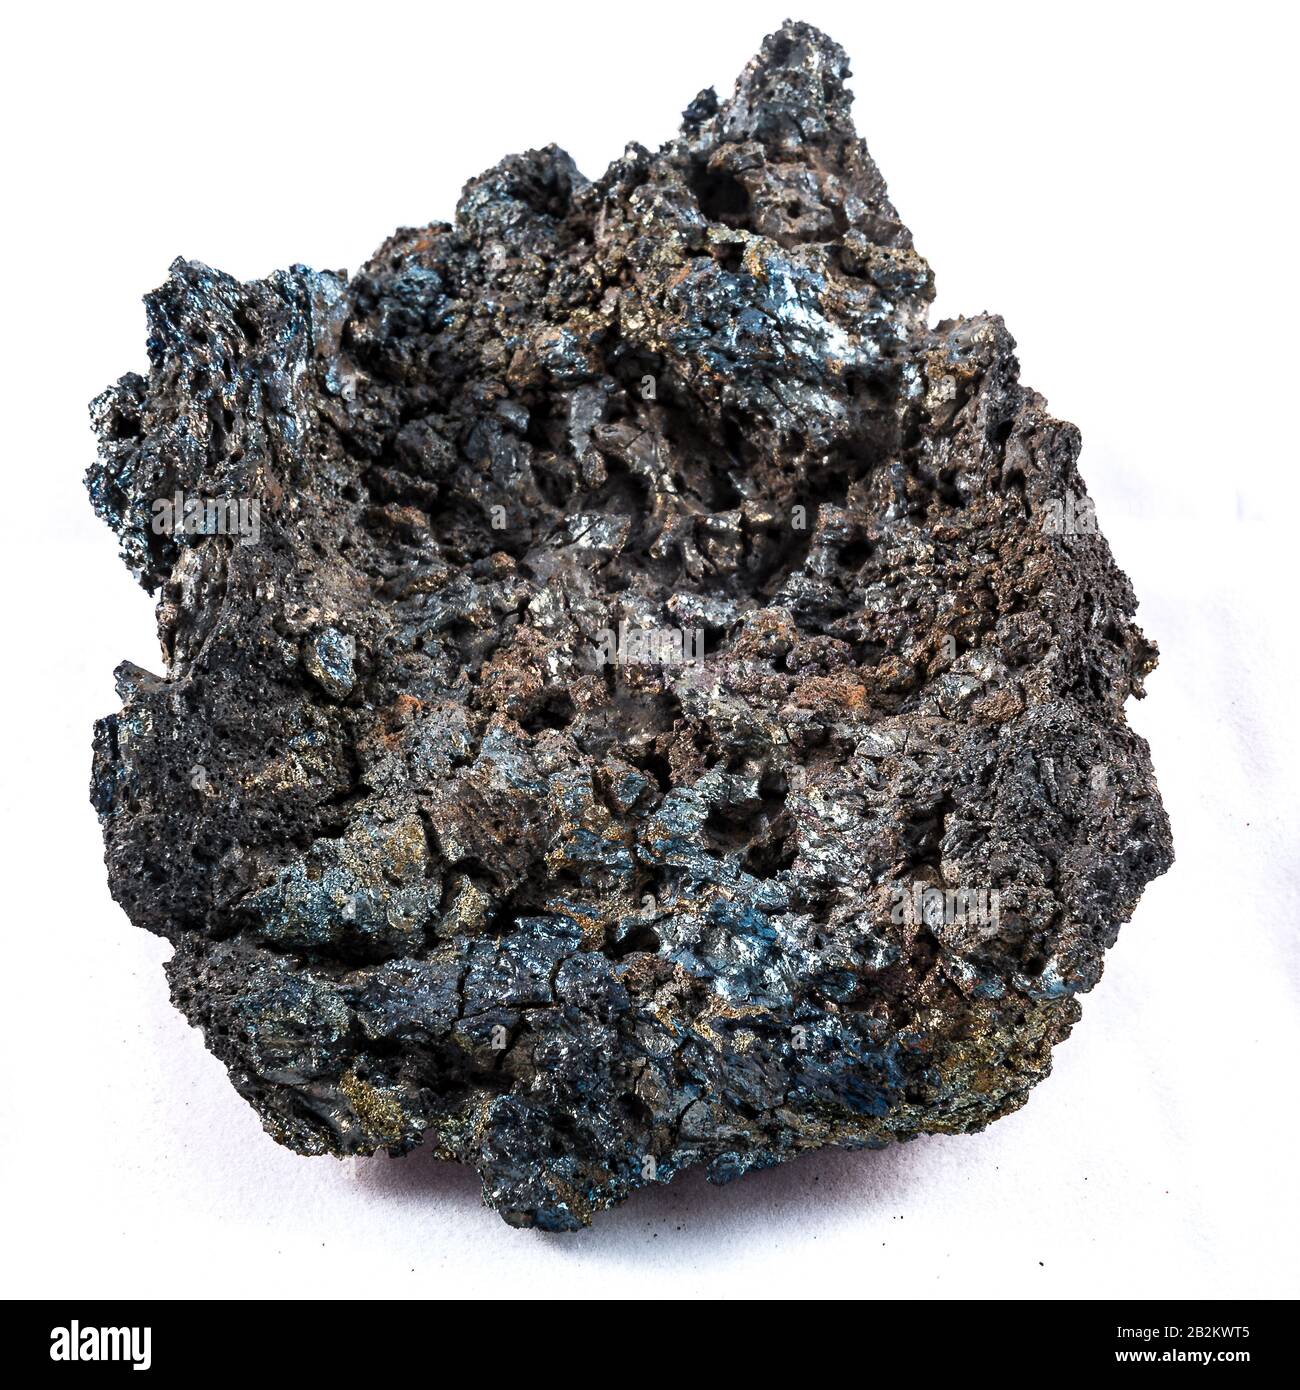 Vulkanisches Gestein - Skoria - igneous Rock - isoliert bei einer Studioaufnahme Stockfoto